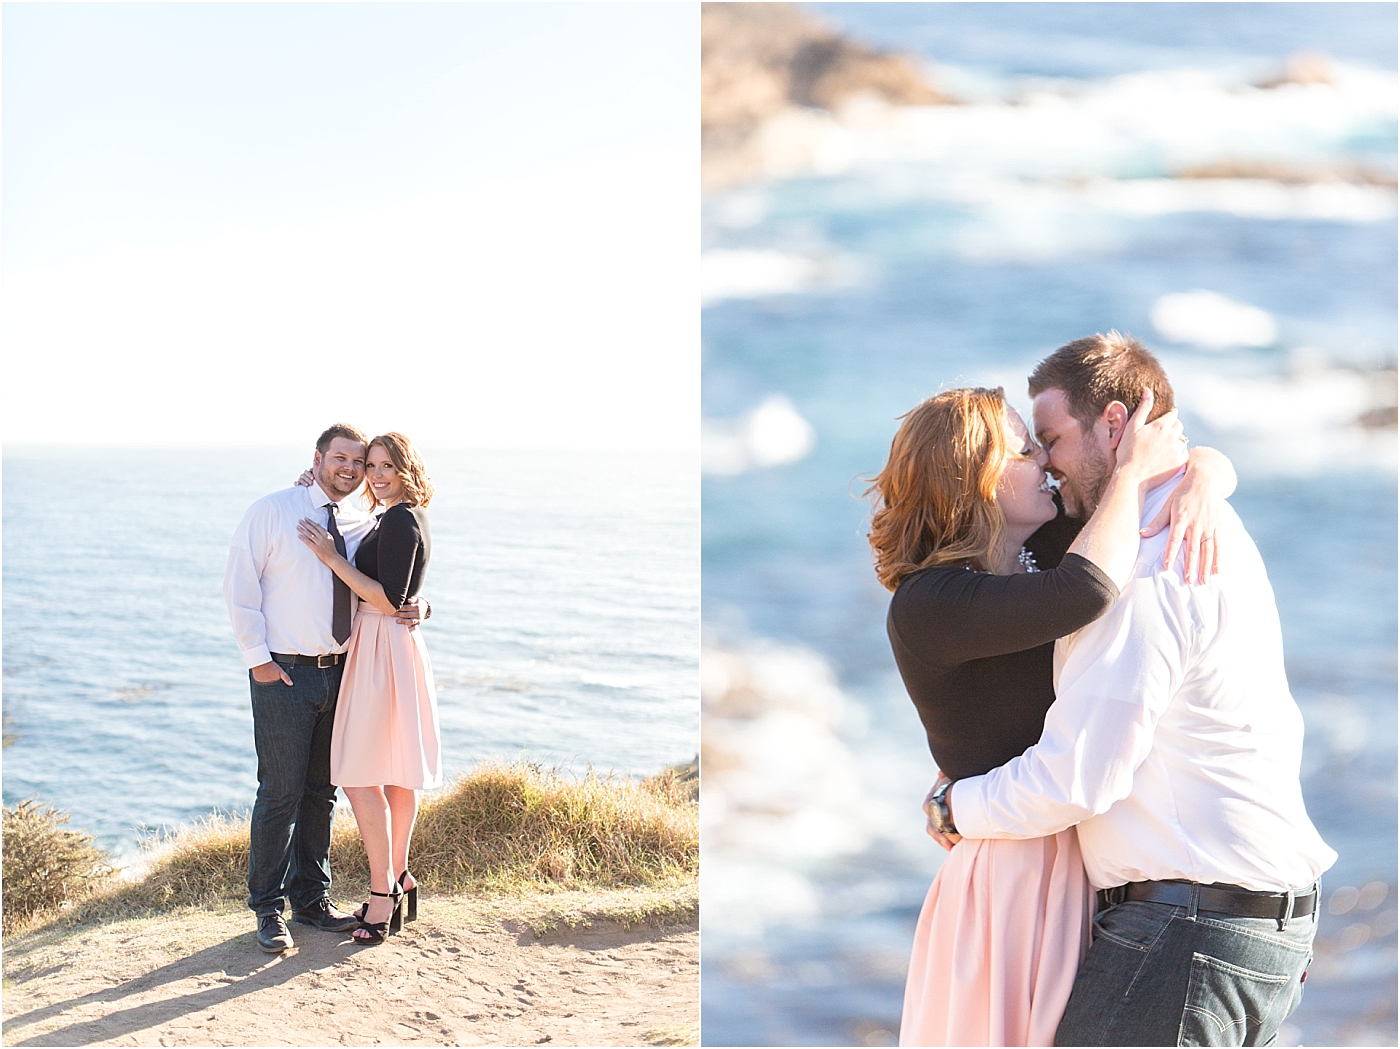 Big Sur Proposal | Laura & Rachel Photography